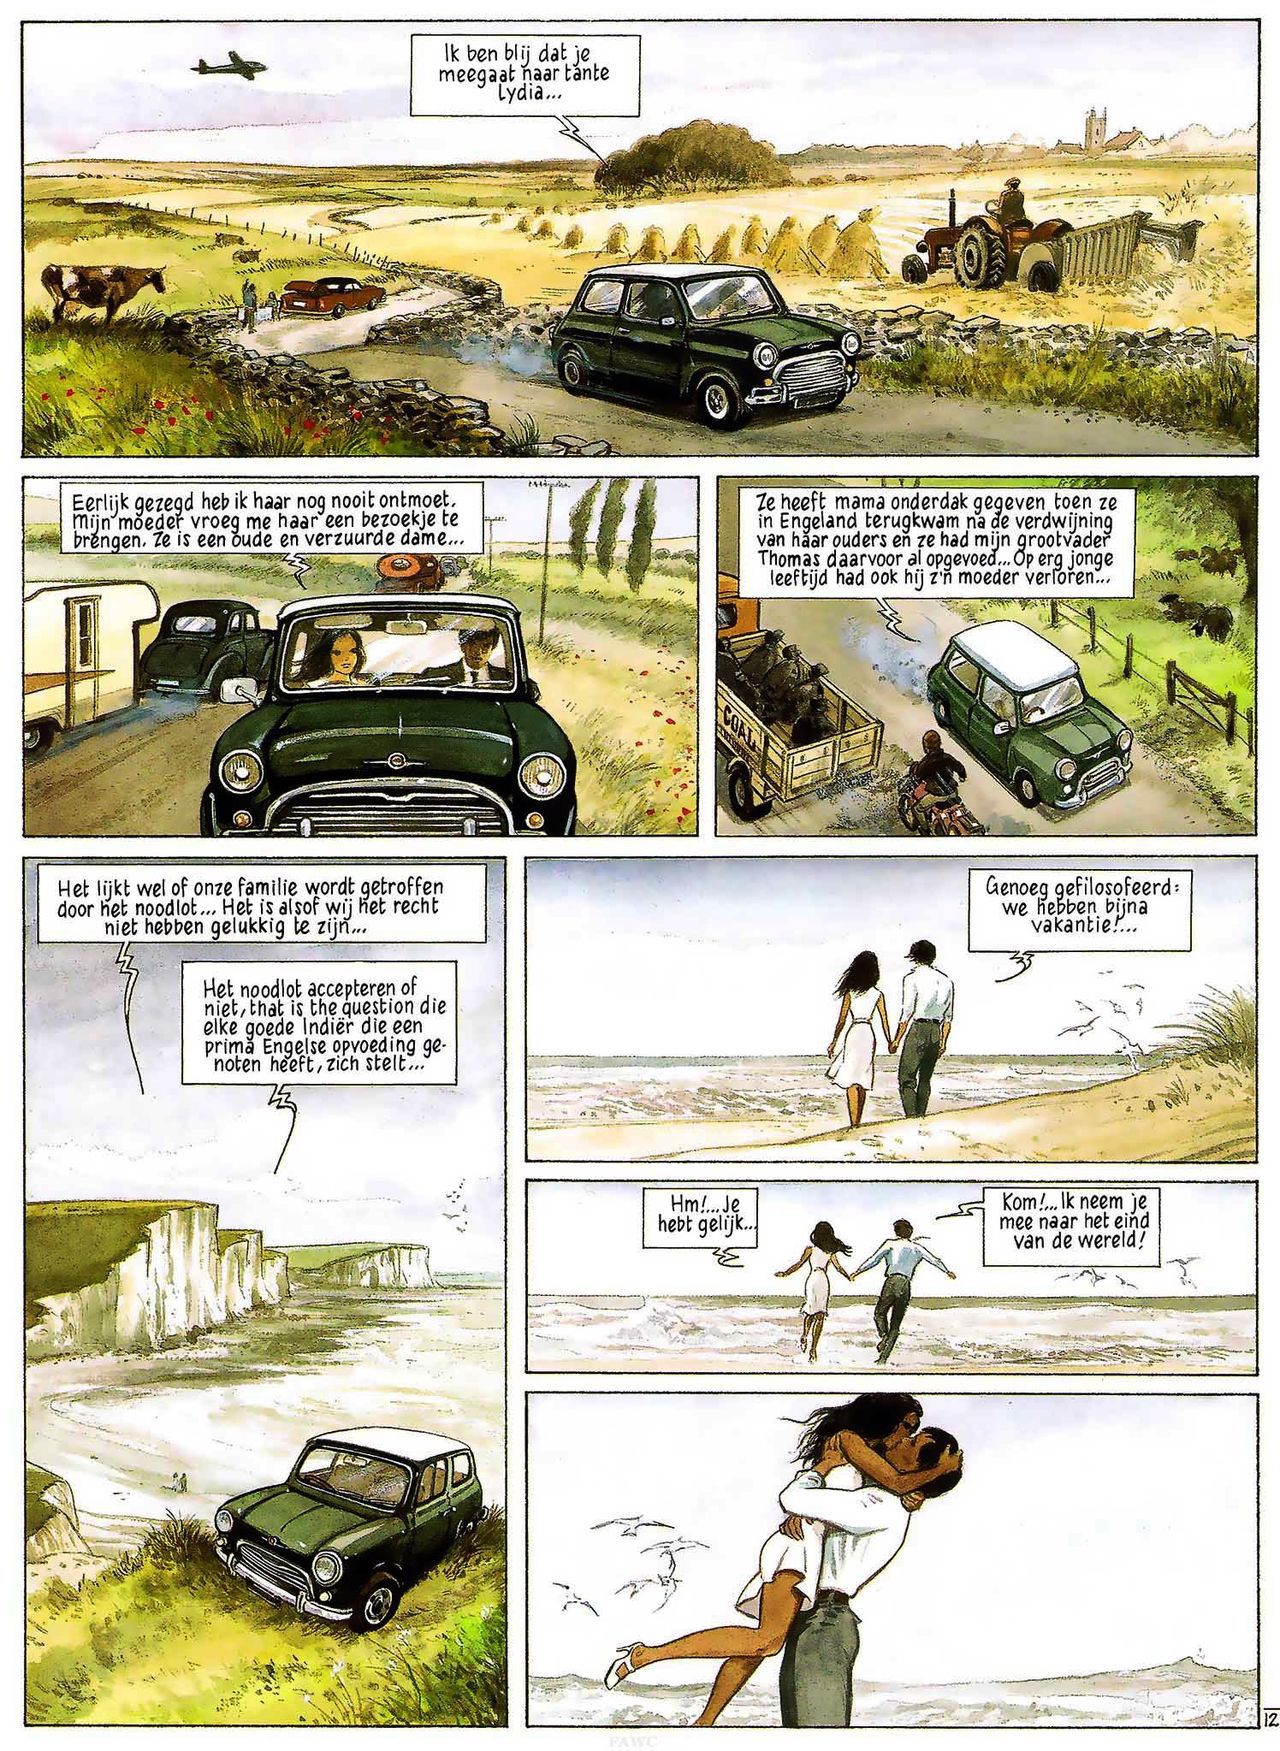 India Dreams - 03 - In De Schaduw Van De Bougainvilles (Dutch) Engelstalige en Duitse strips die op deze site staan, hier is de Nederlandse uitgave! 14